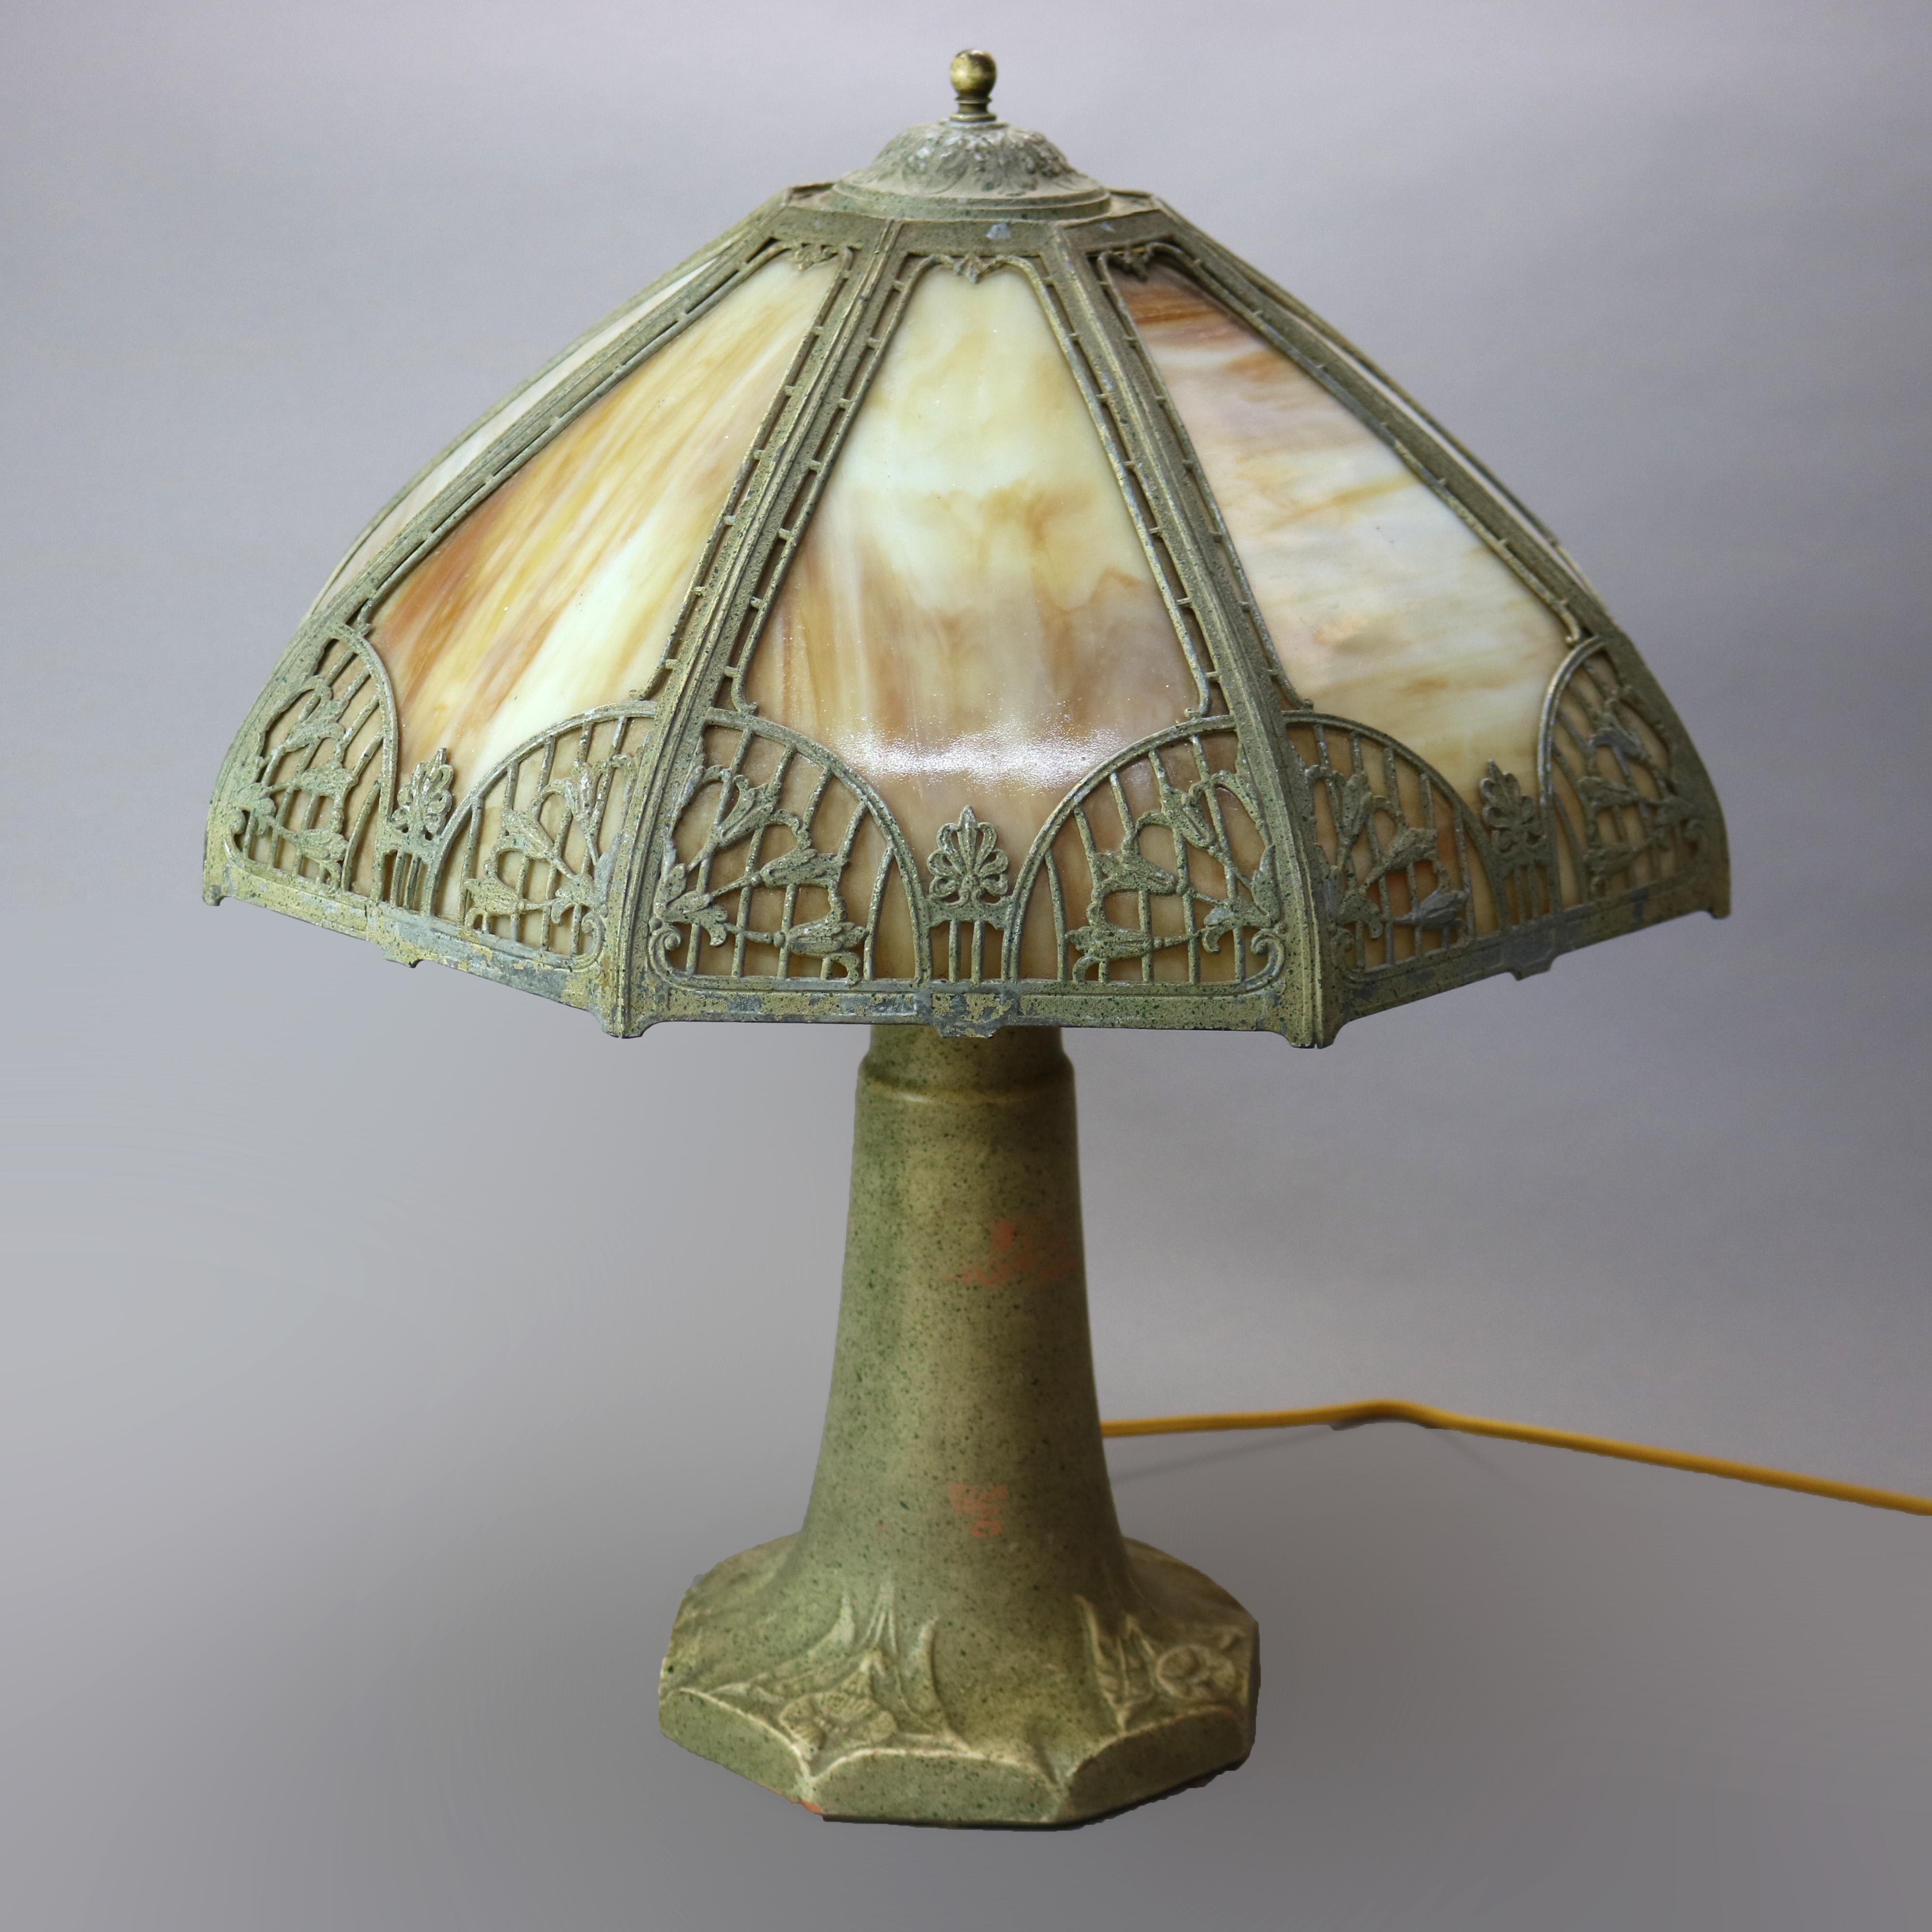 Eine antike Arts and Crafts-Tischlampe in der Art von Bradley und Hubbard bietet einen gegossenen filigranen Schirm mit Blättern und Blumen, der gebogene Schlackengläser auf einem Terrakotta-Sockel mit doppeltem Sockel und floralen Reliefelementen